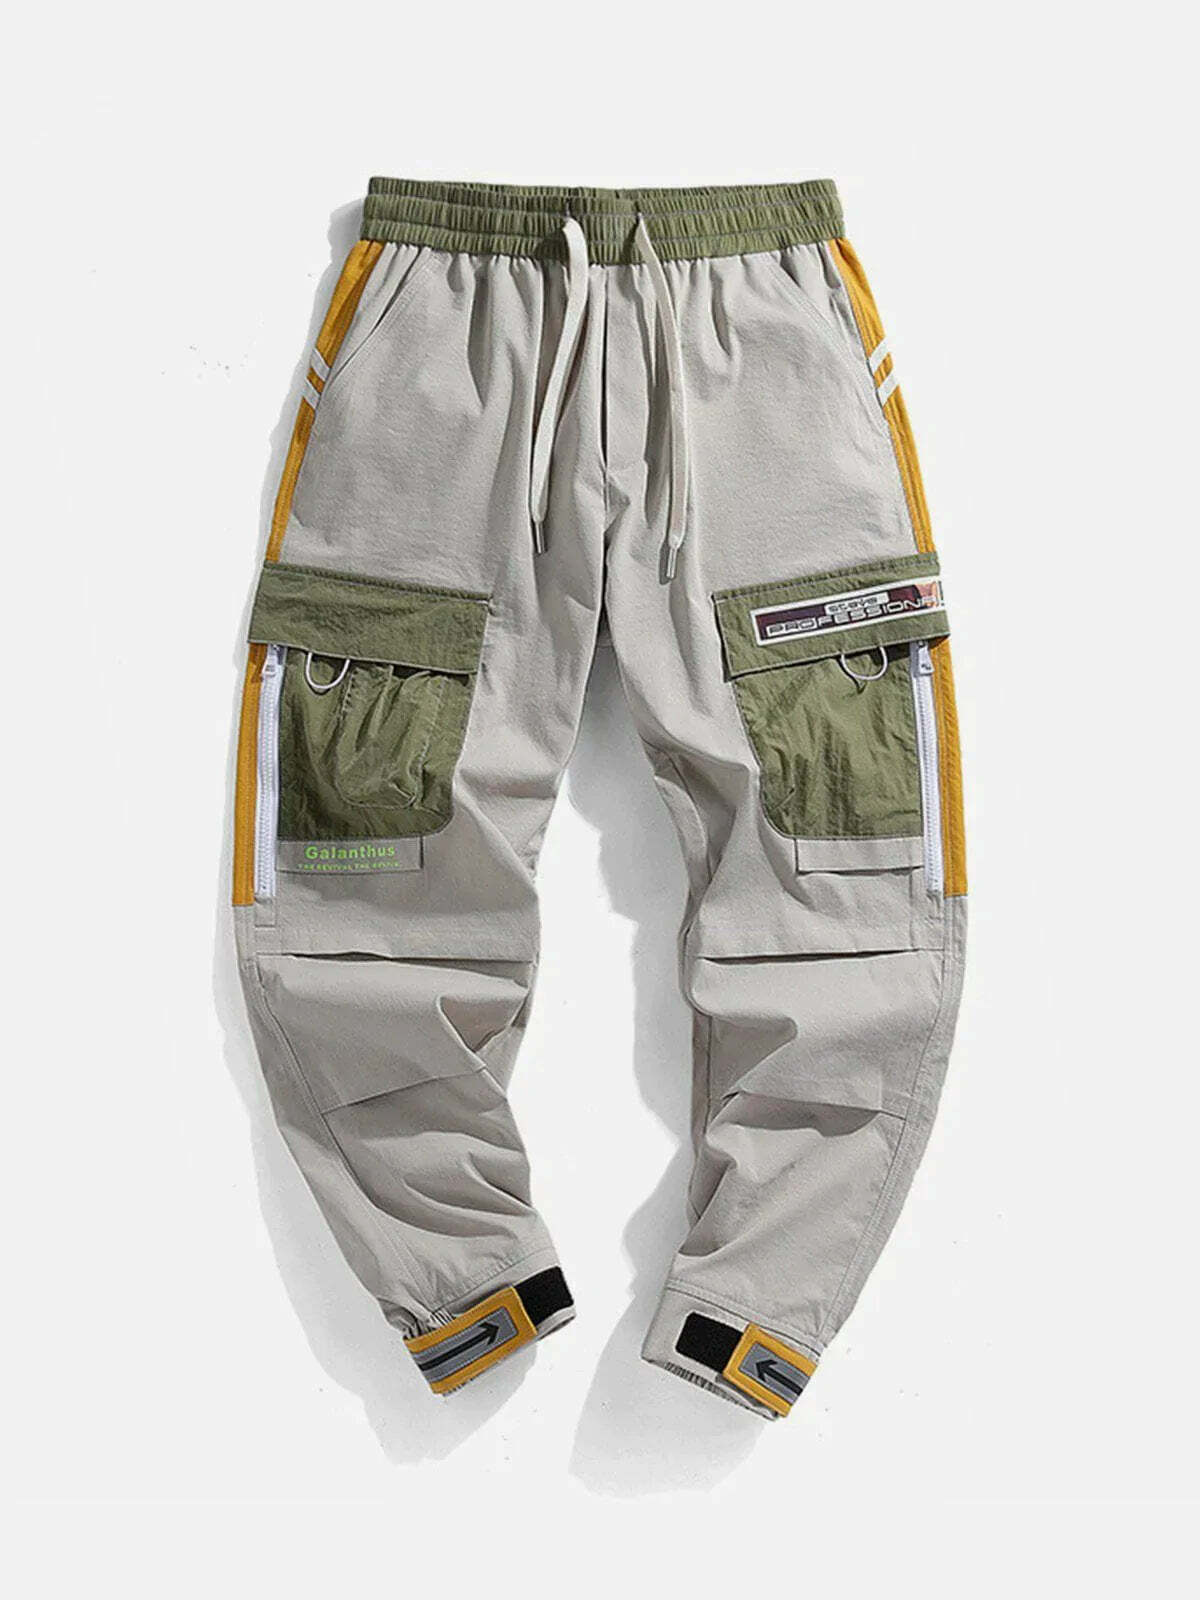 loose pocket trim pants urban streetwear essential 2039